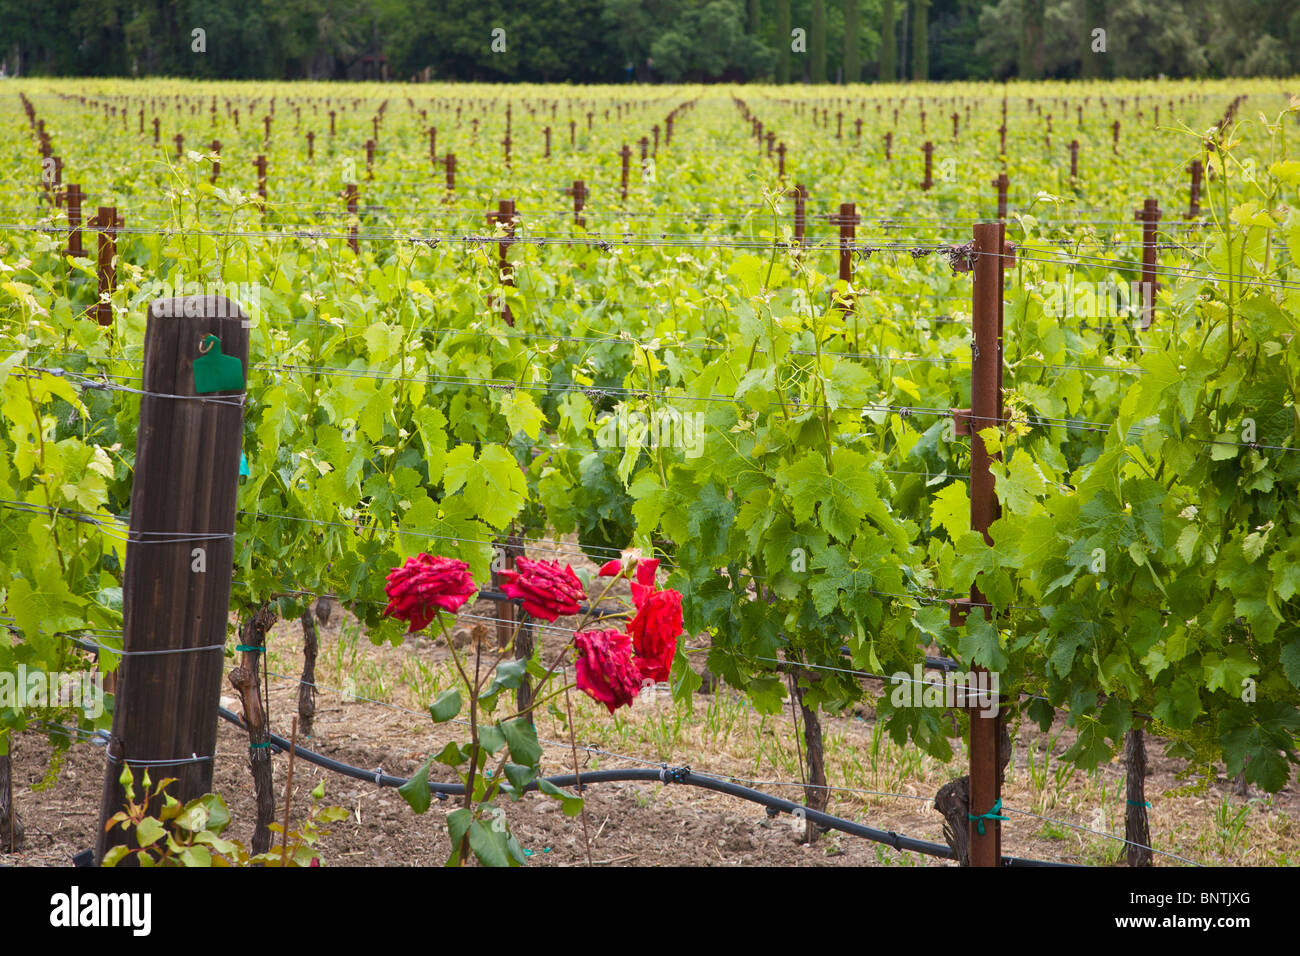 Spring grape vineyards in Napa Valley California Stock Photo